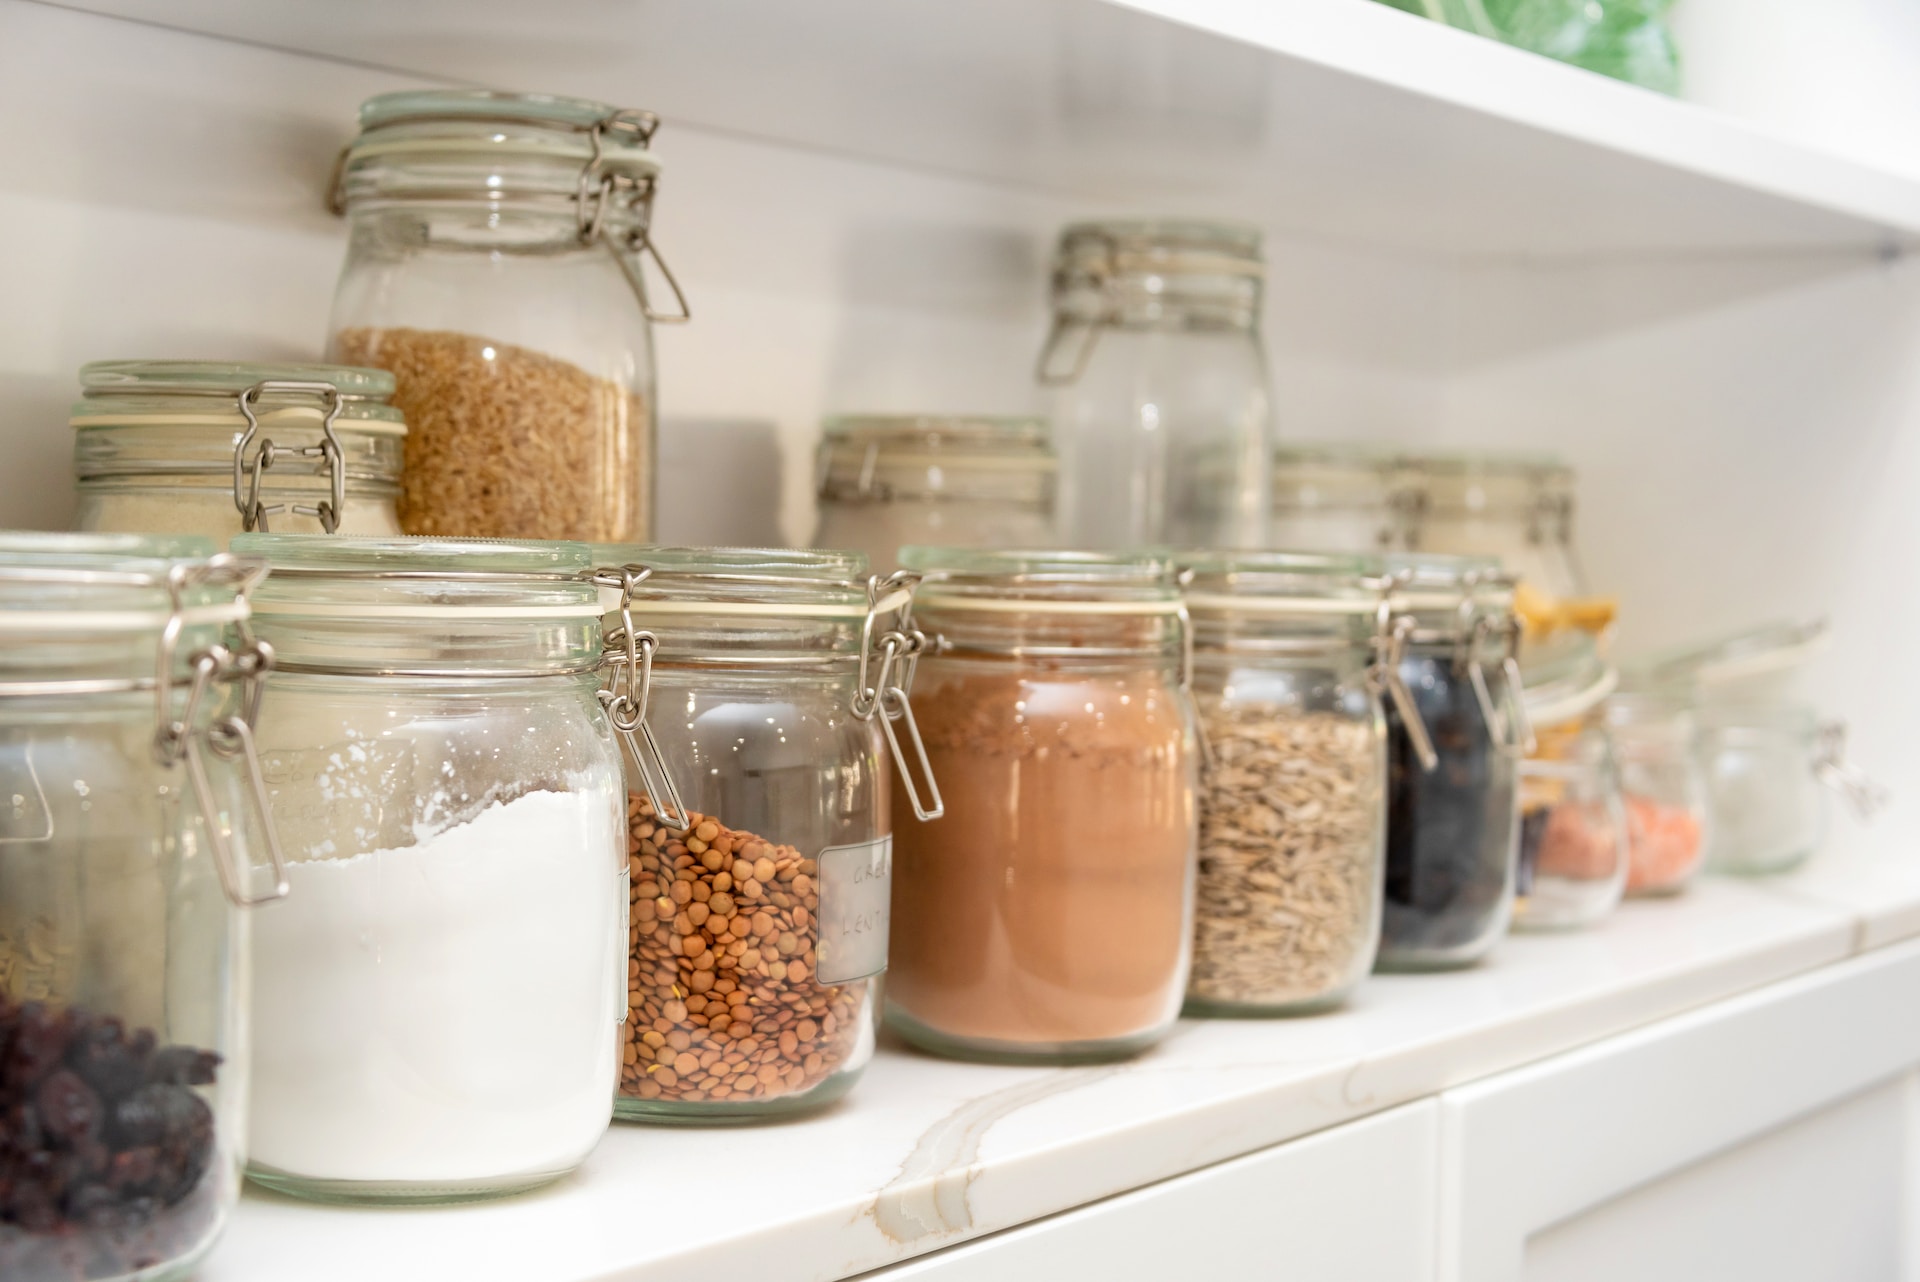 Glass jars with grains on a shelf.